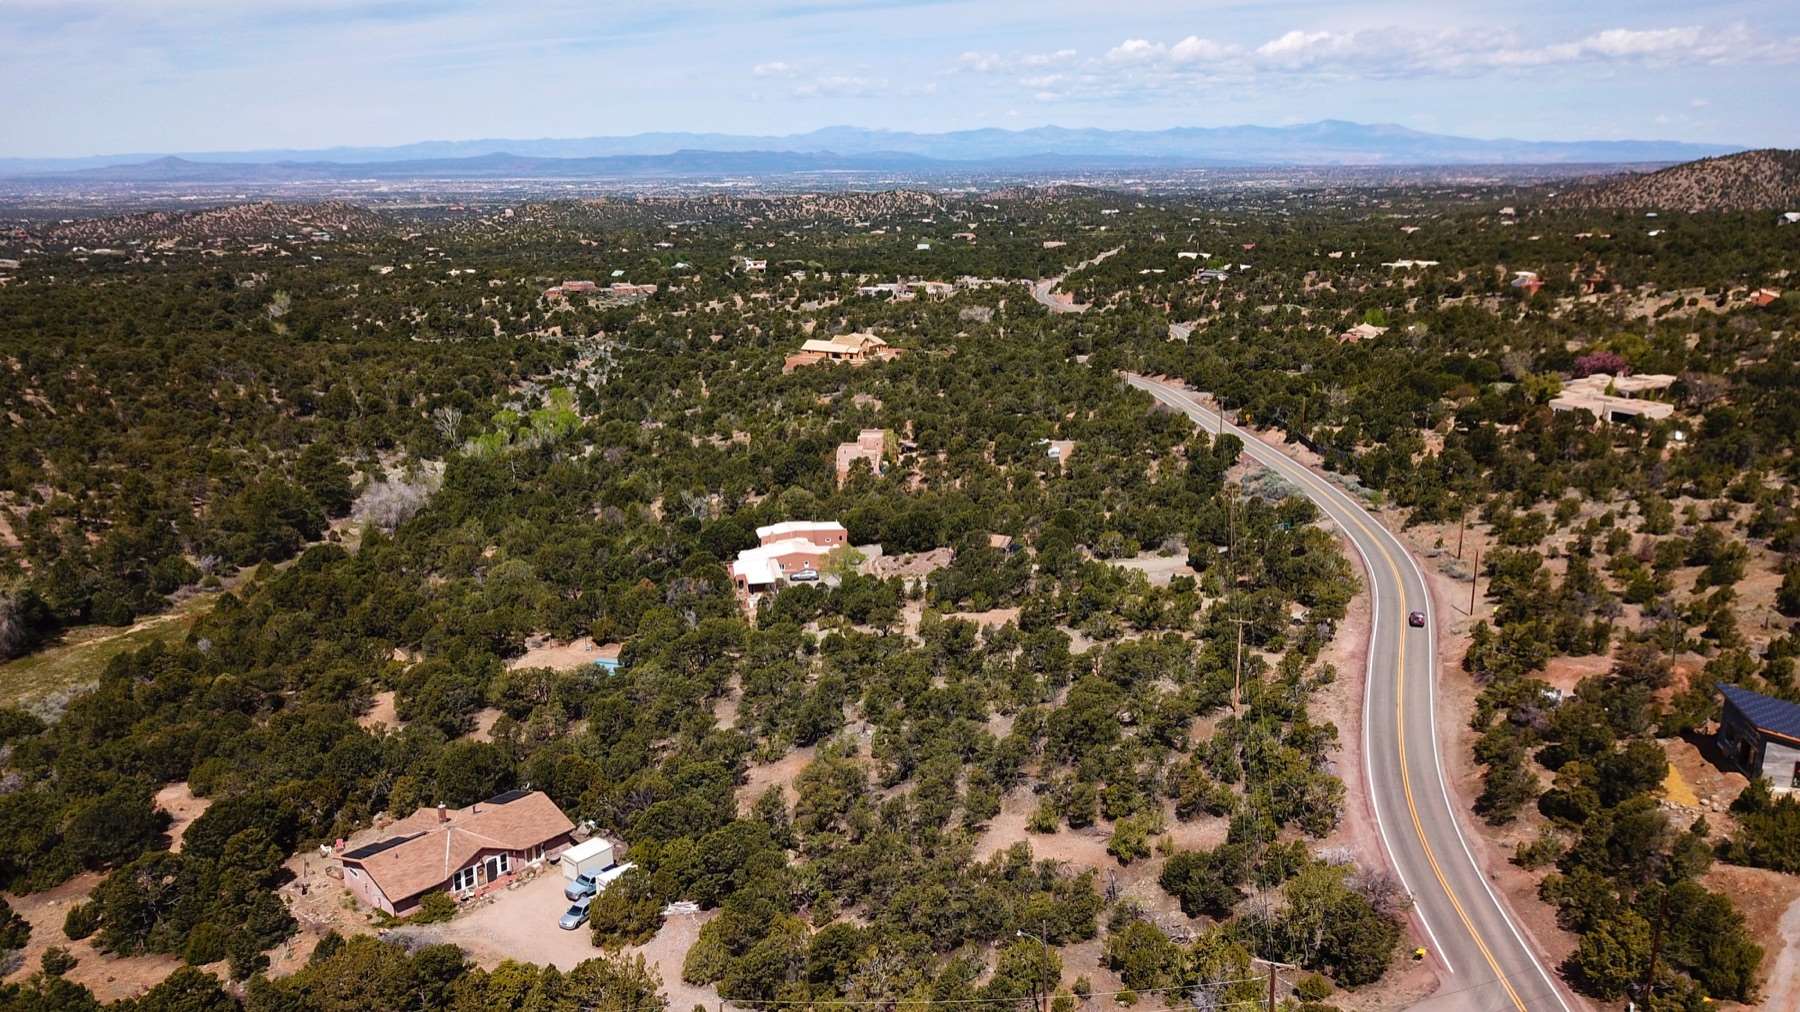 7558 Old Santa Fe, Santa Fe, New Mexico 87505, ,Land,For Sale,7558 Old Santa Fe,201802830